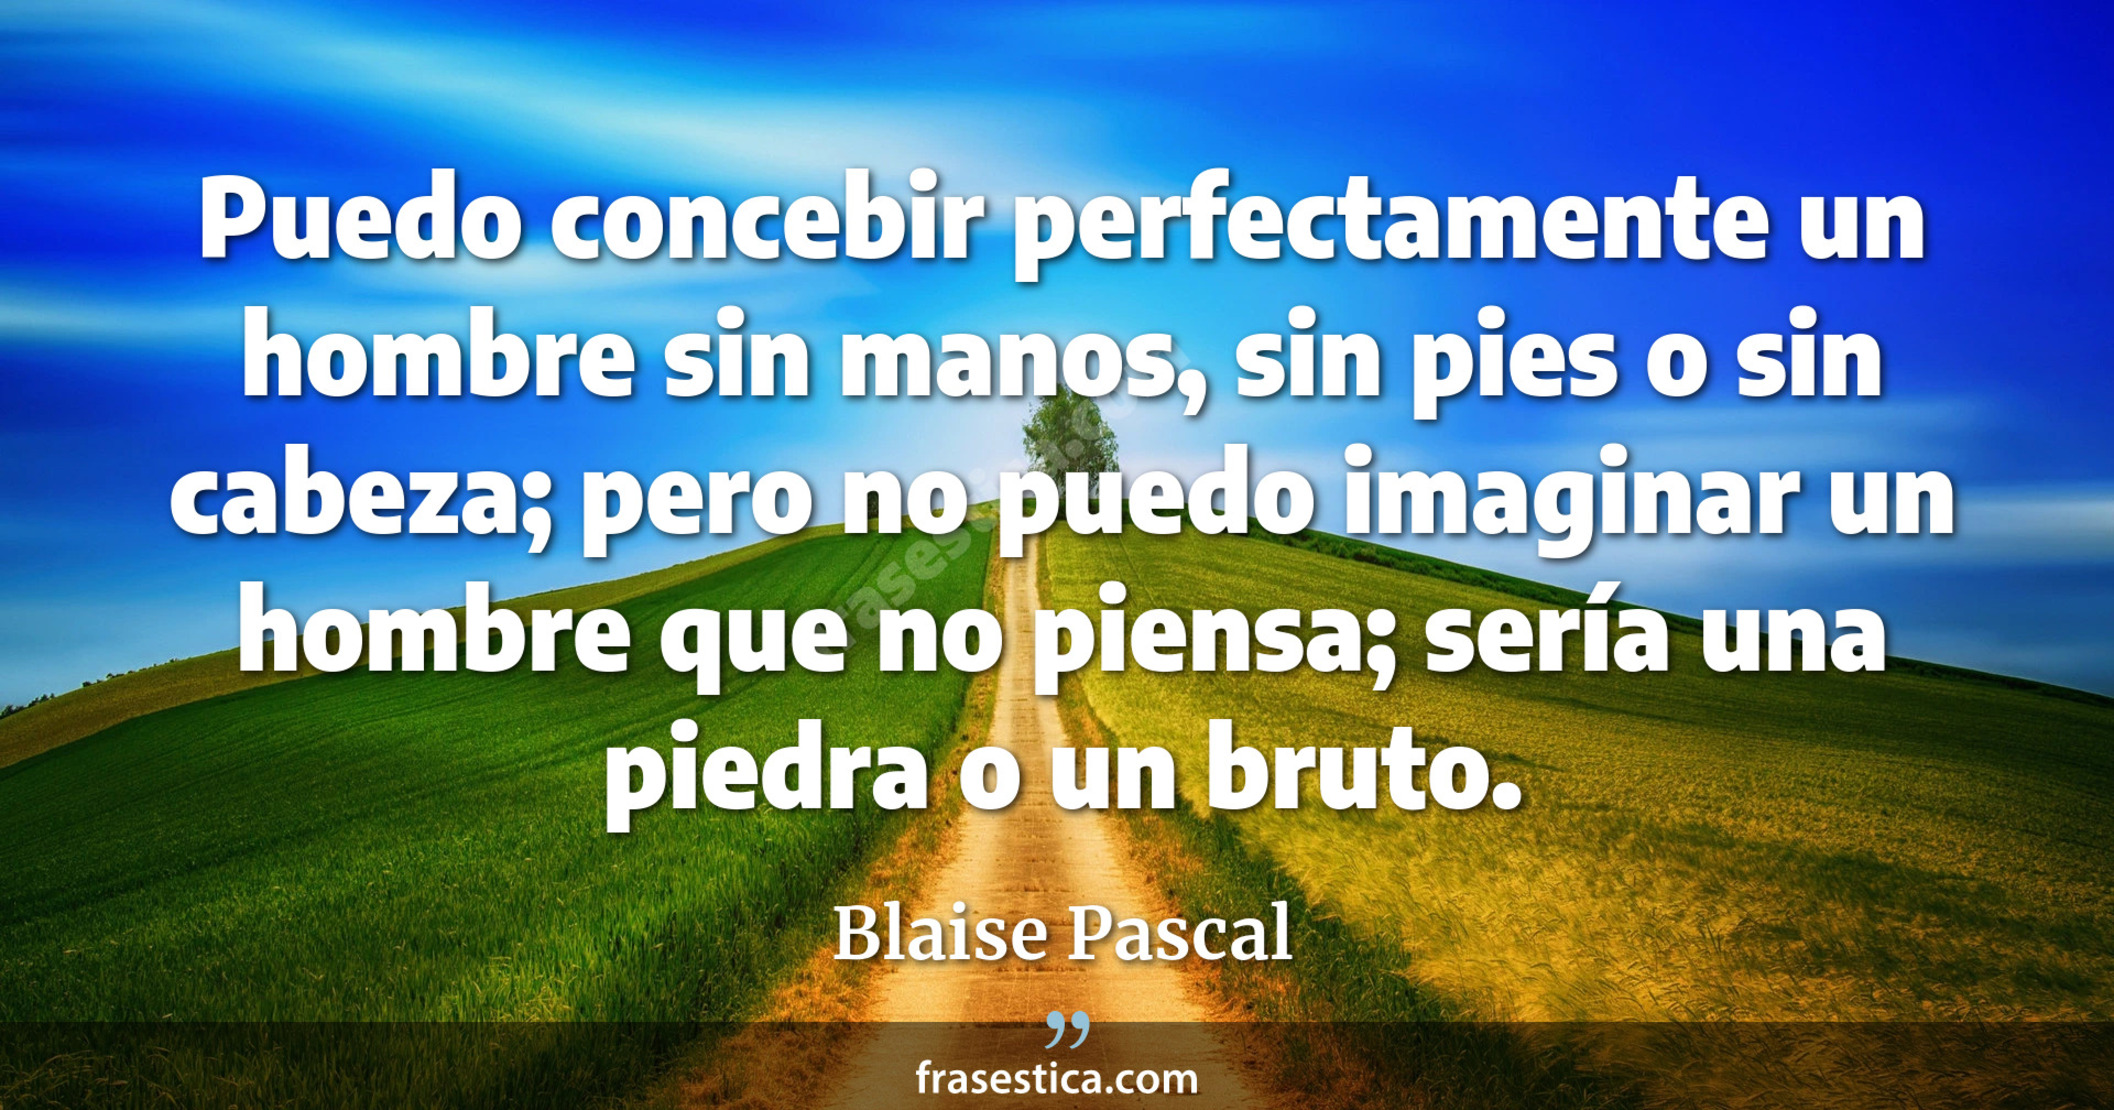 Puedo concebir perfectamente un hombre sin manos, sin pies o sin cabeza; pero no puedo imaginar un hombre que no piensa; sería una piedra o un bruto. - Blaise Pascal